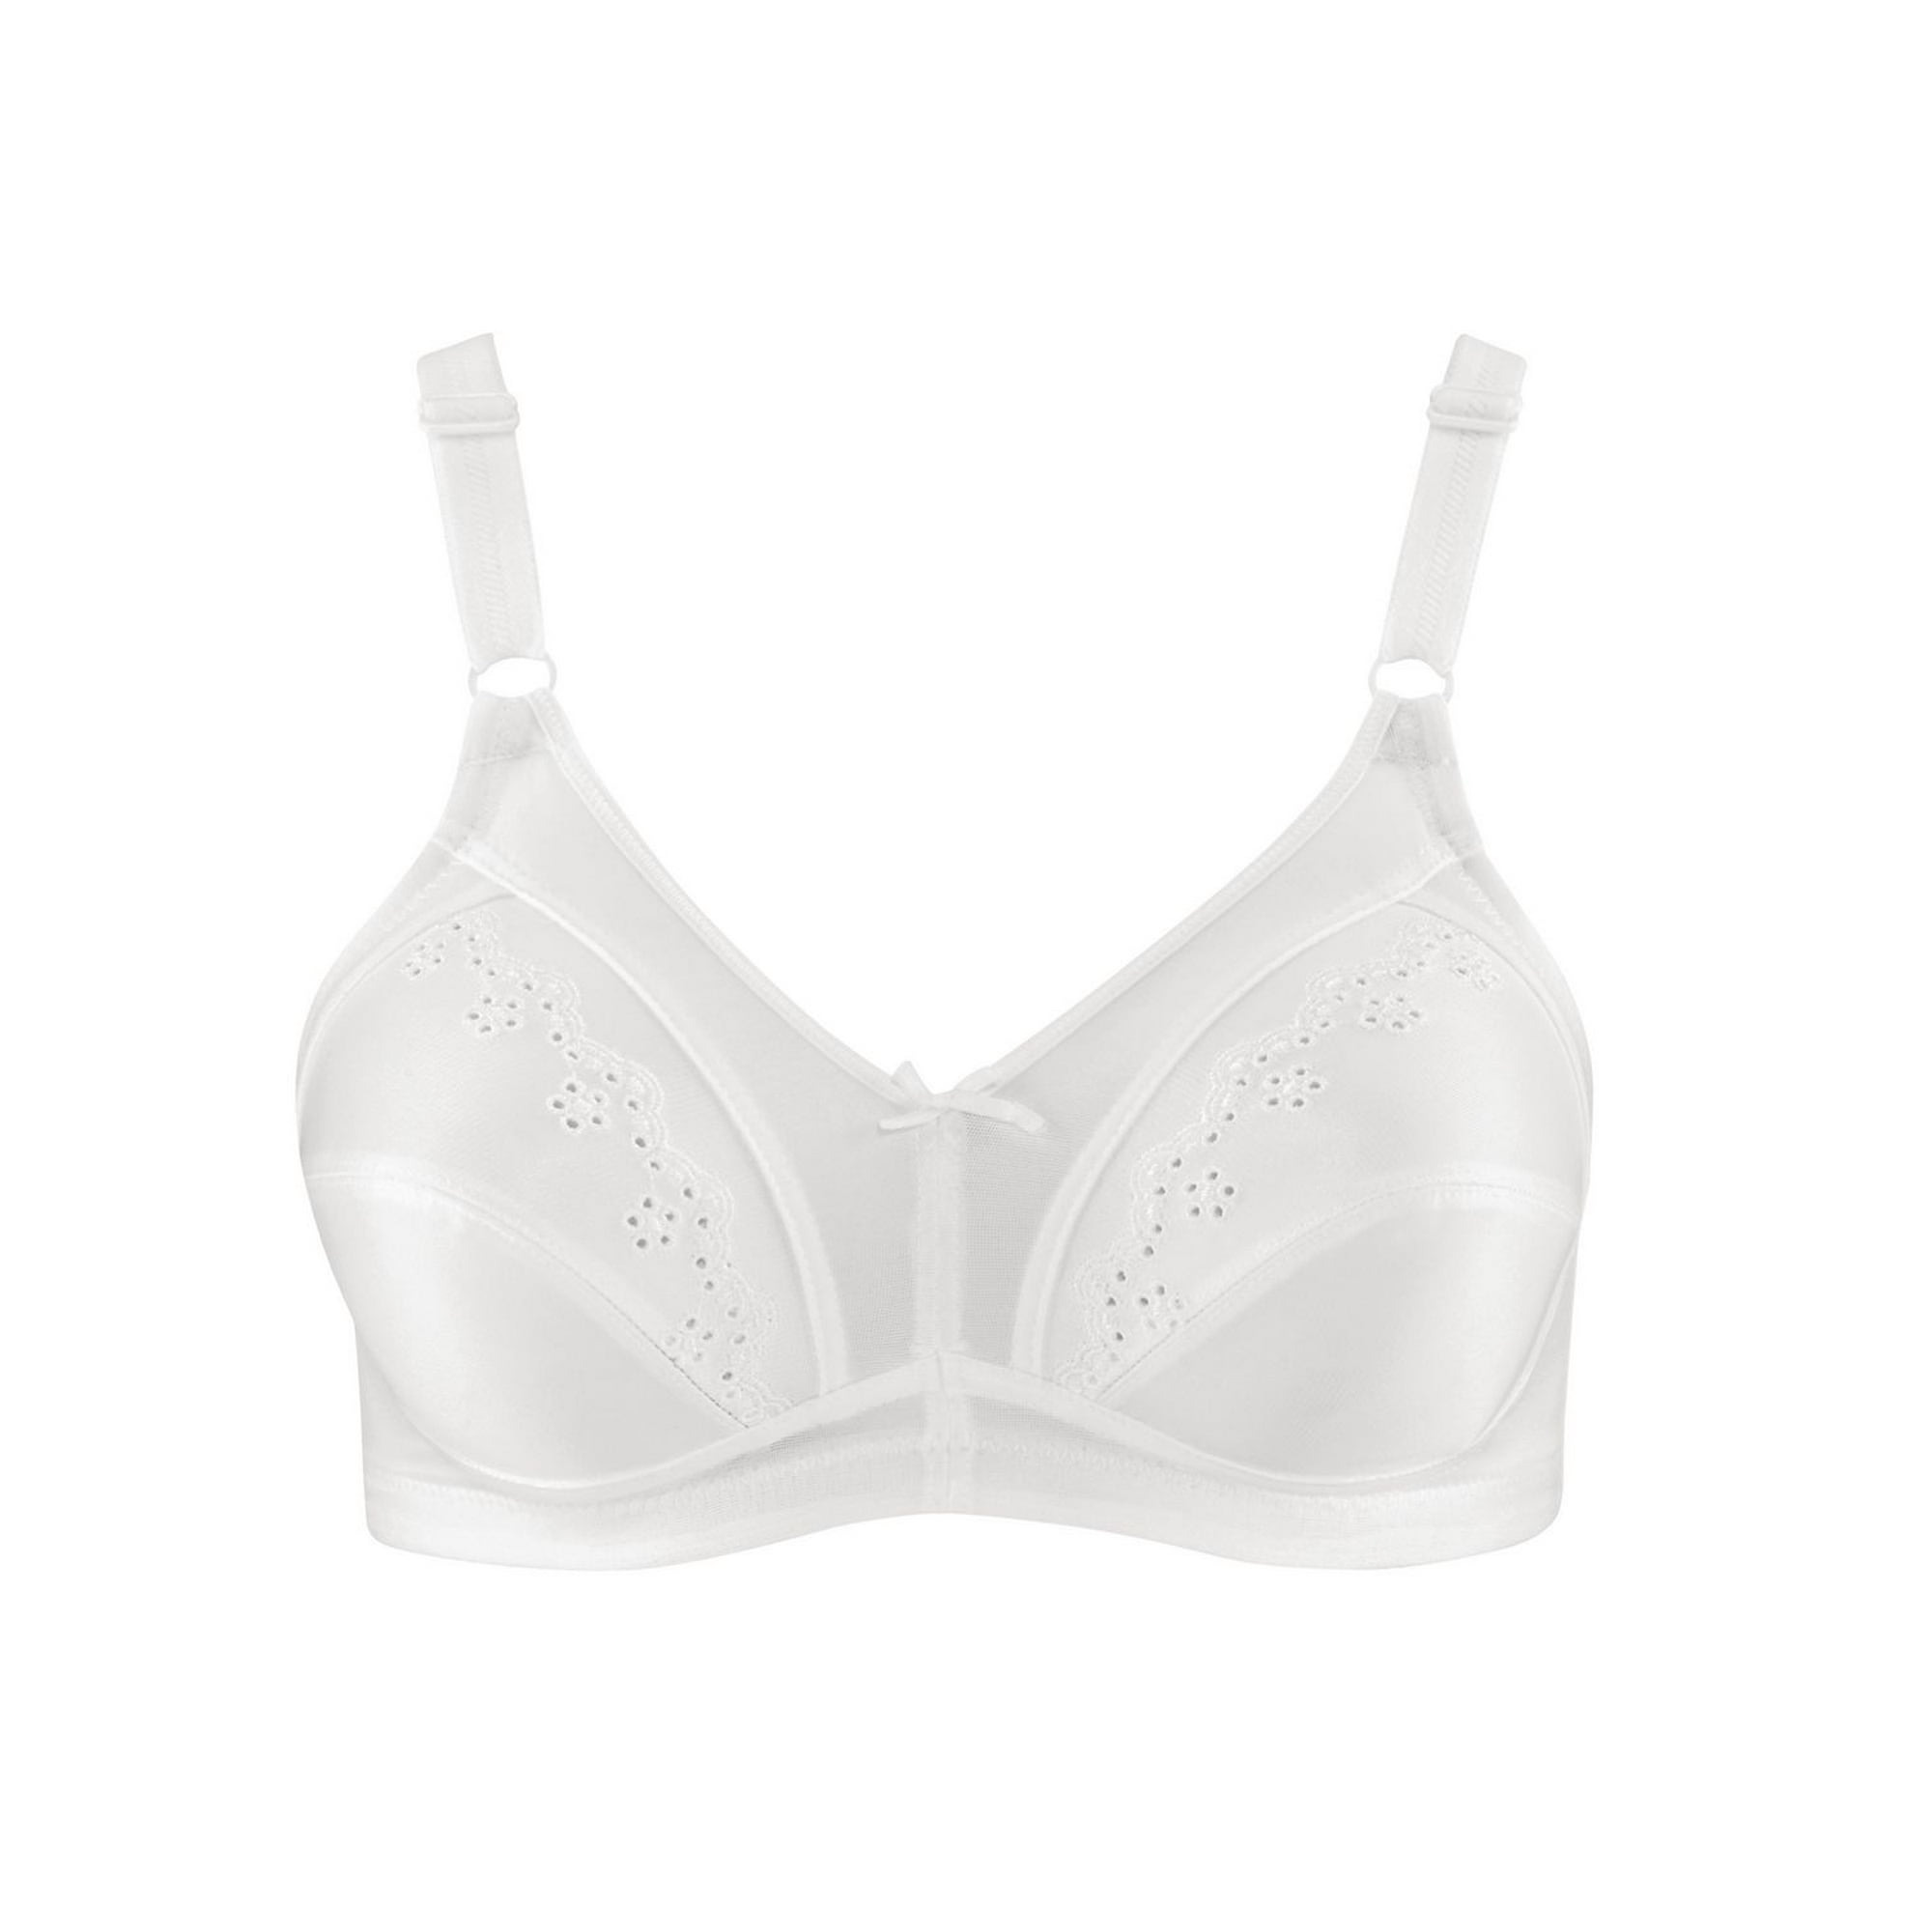 Wonderbra Women's Wireless bra in White, Size: 32A price in UAE